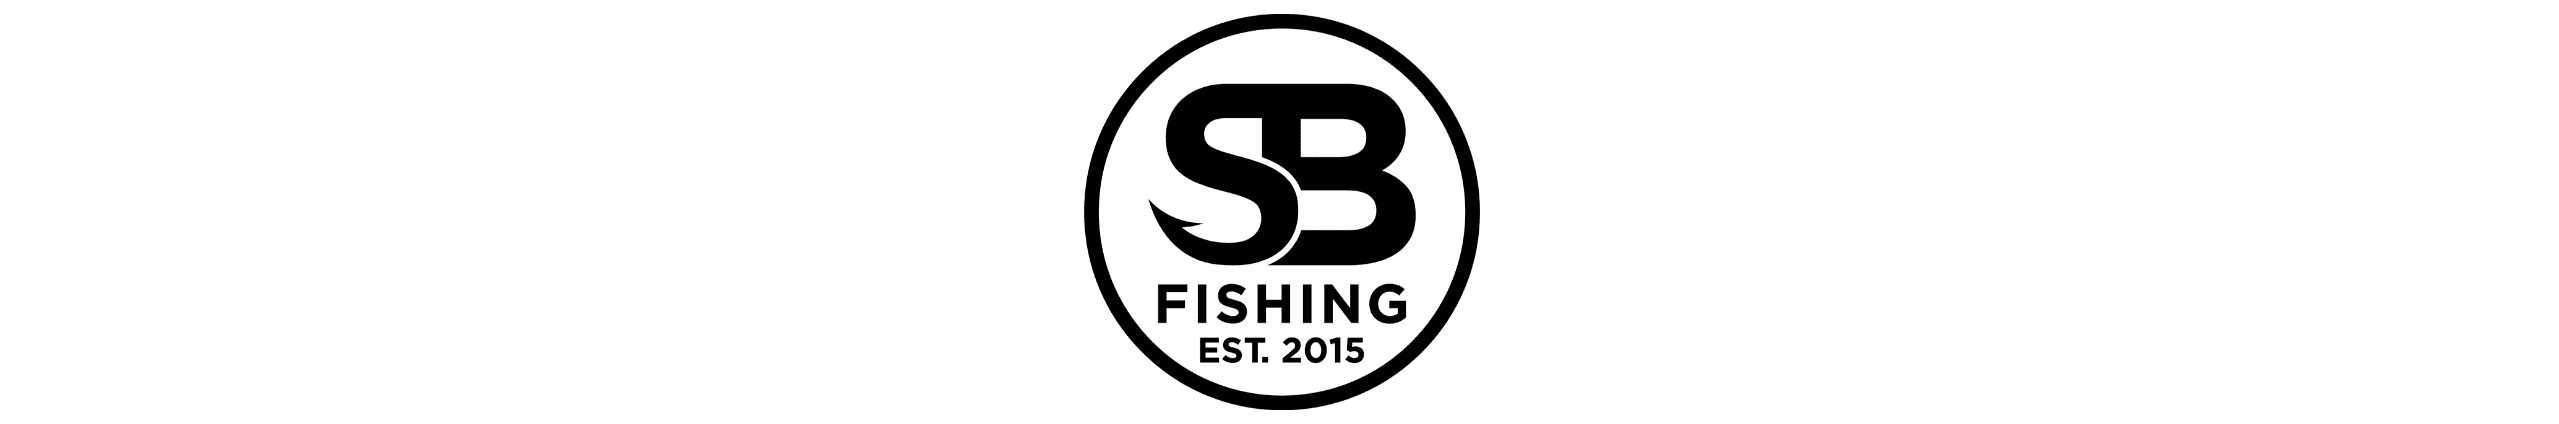 SB FISHING